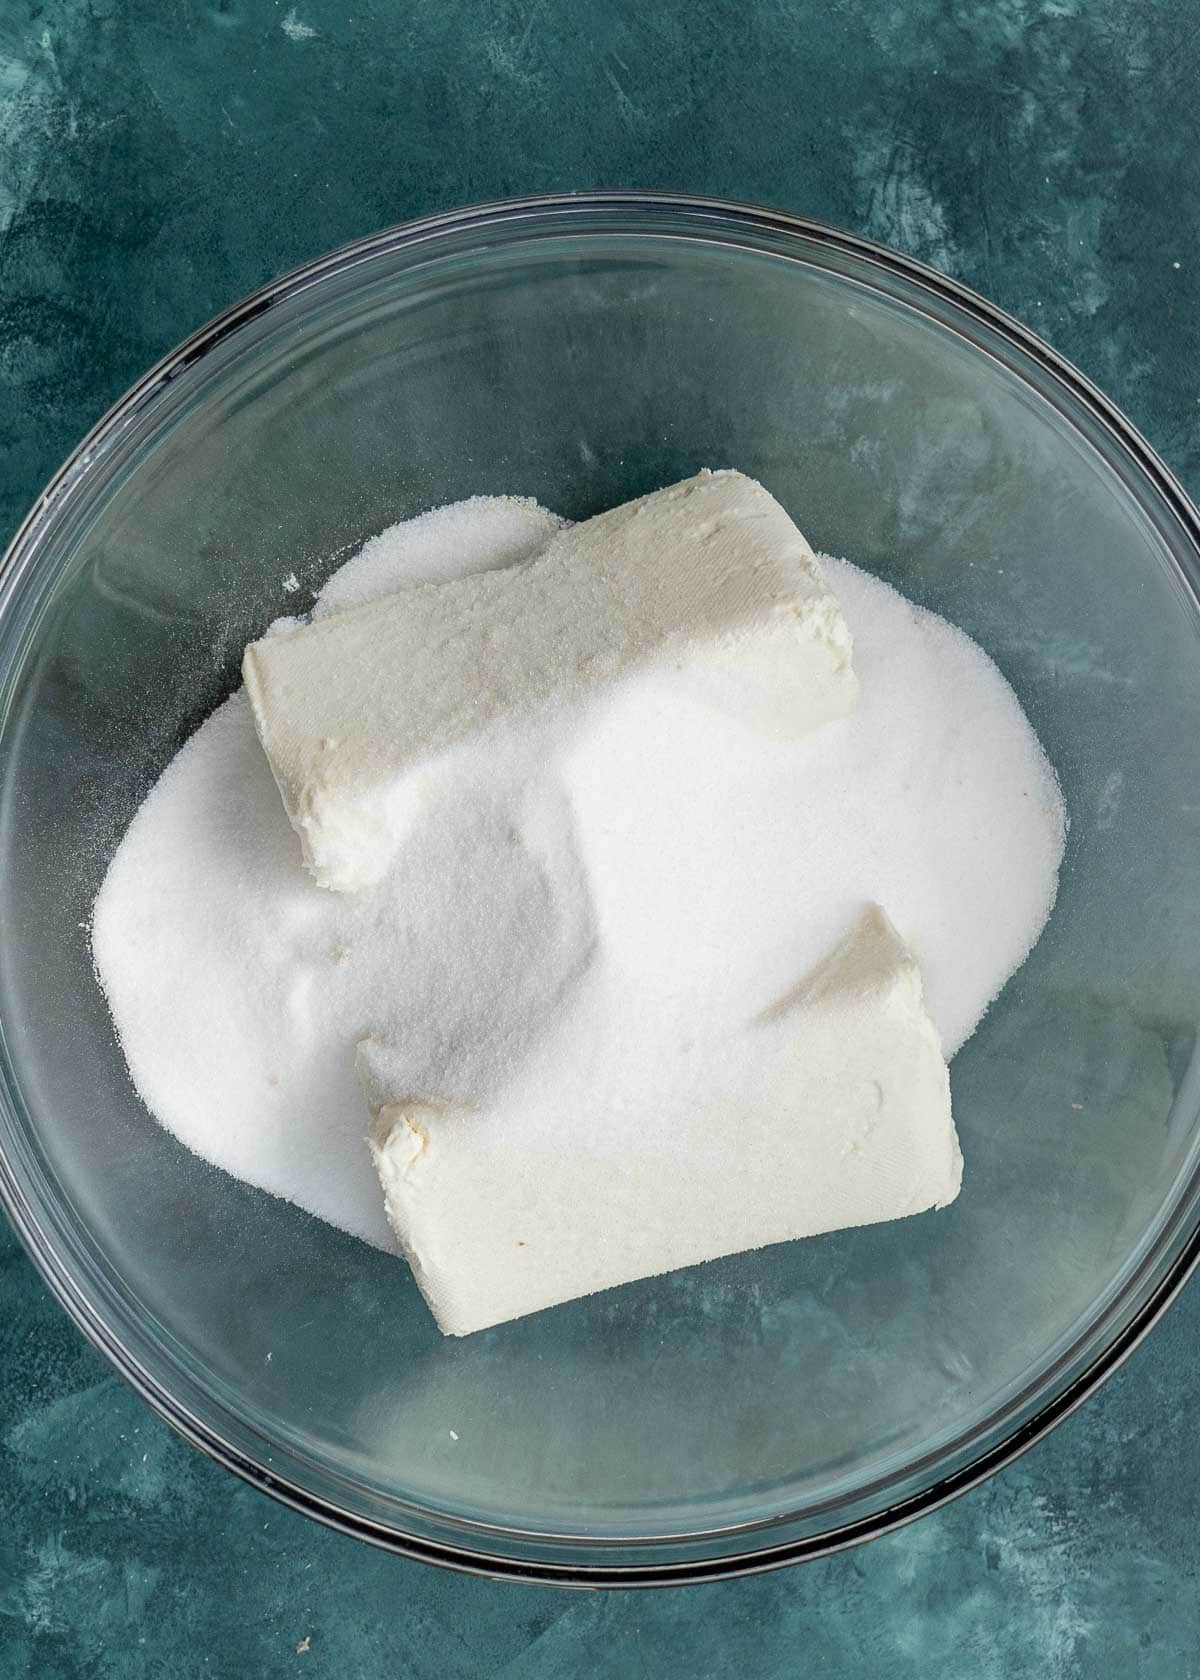 cream cheese and monkfruit in sweetener